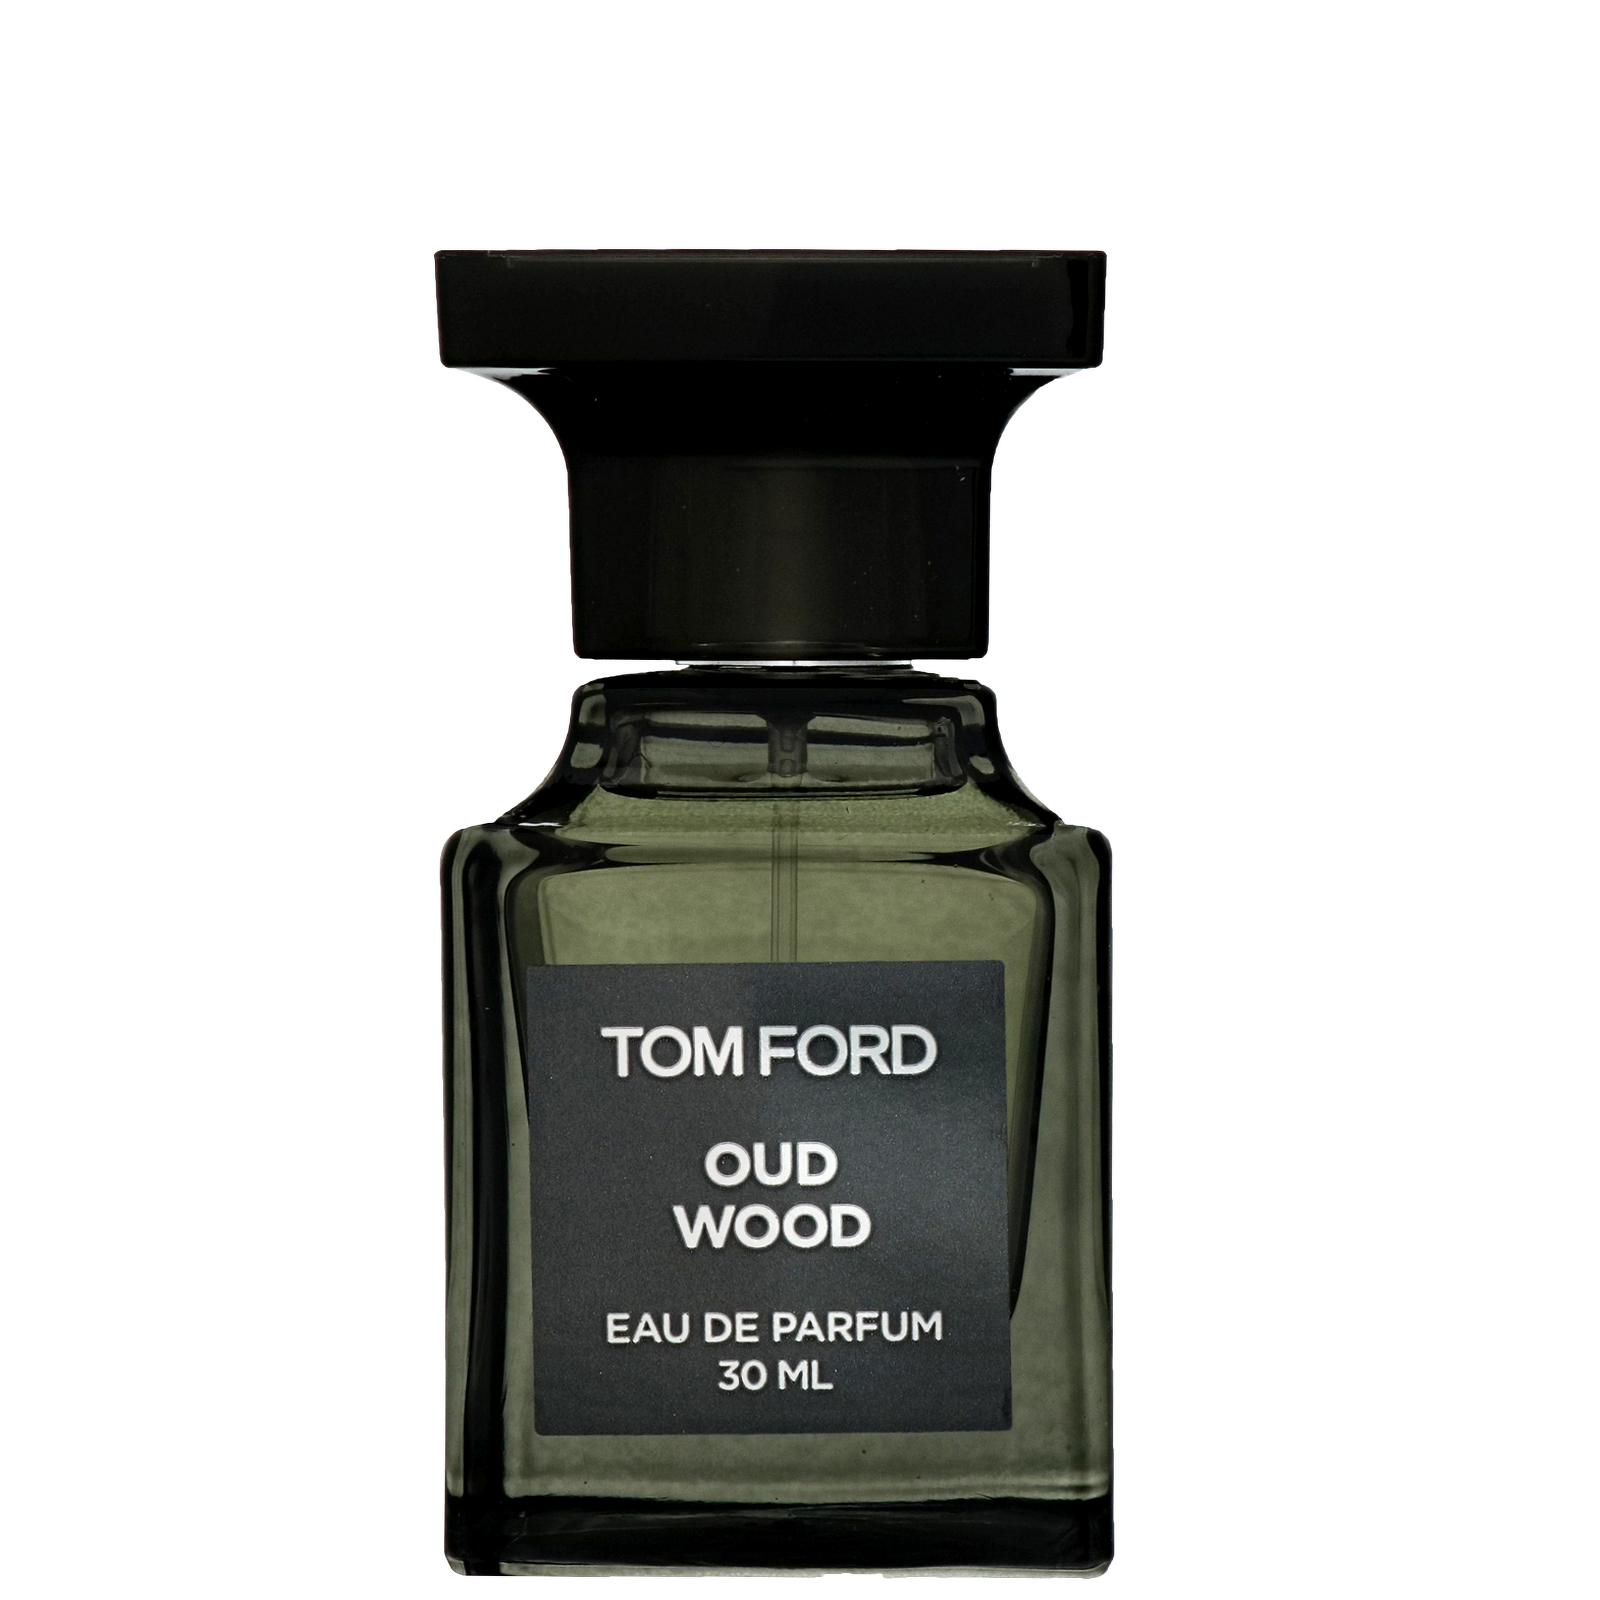 Nước hoa Tom Ford hương gỗ dành cho nam